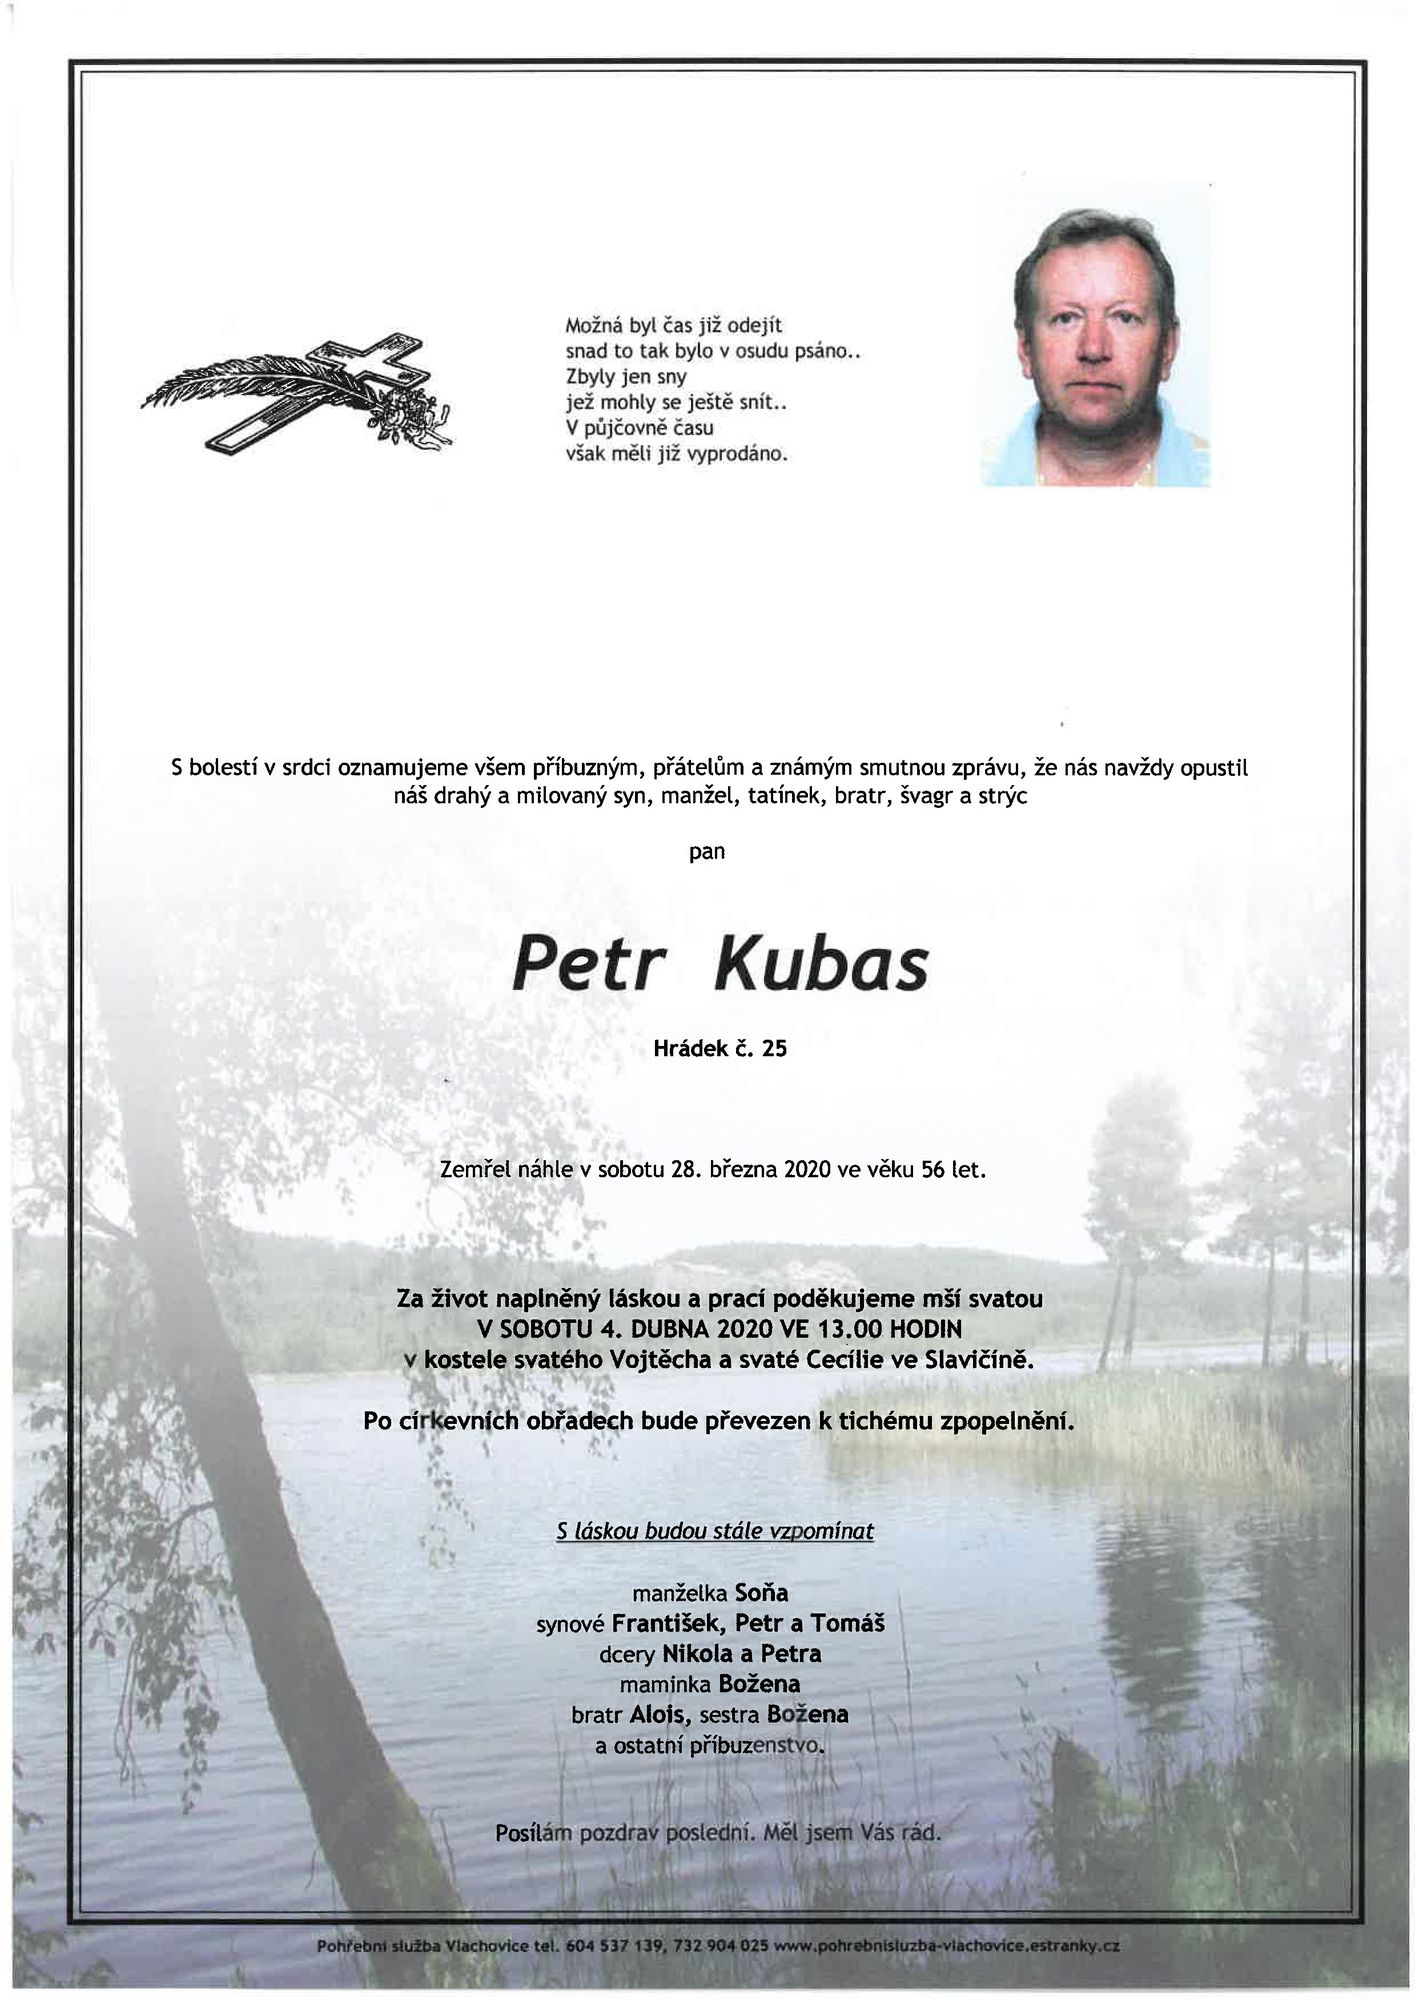 Petr Kubas